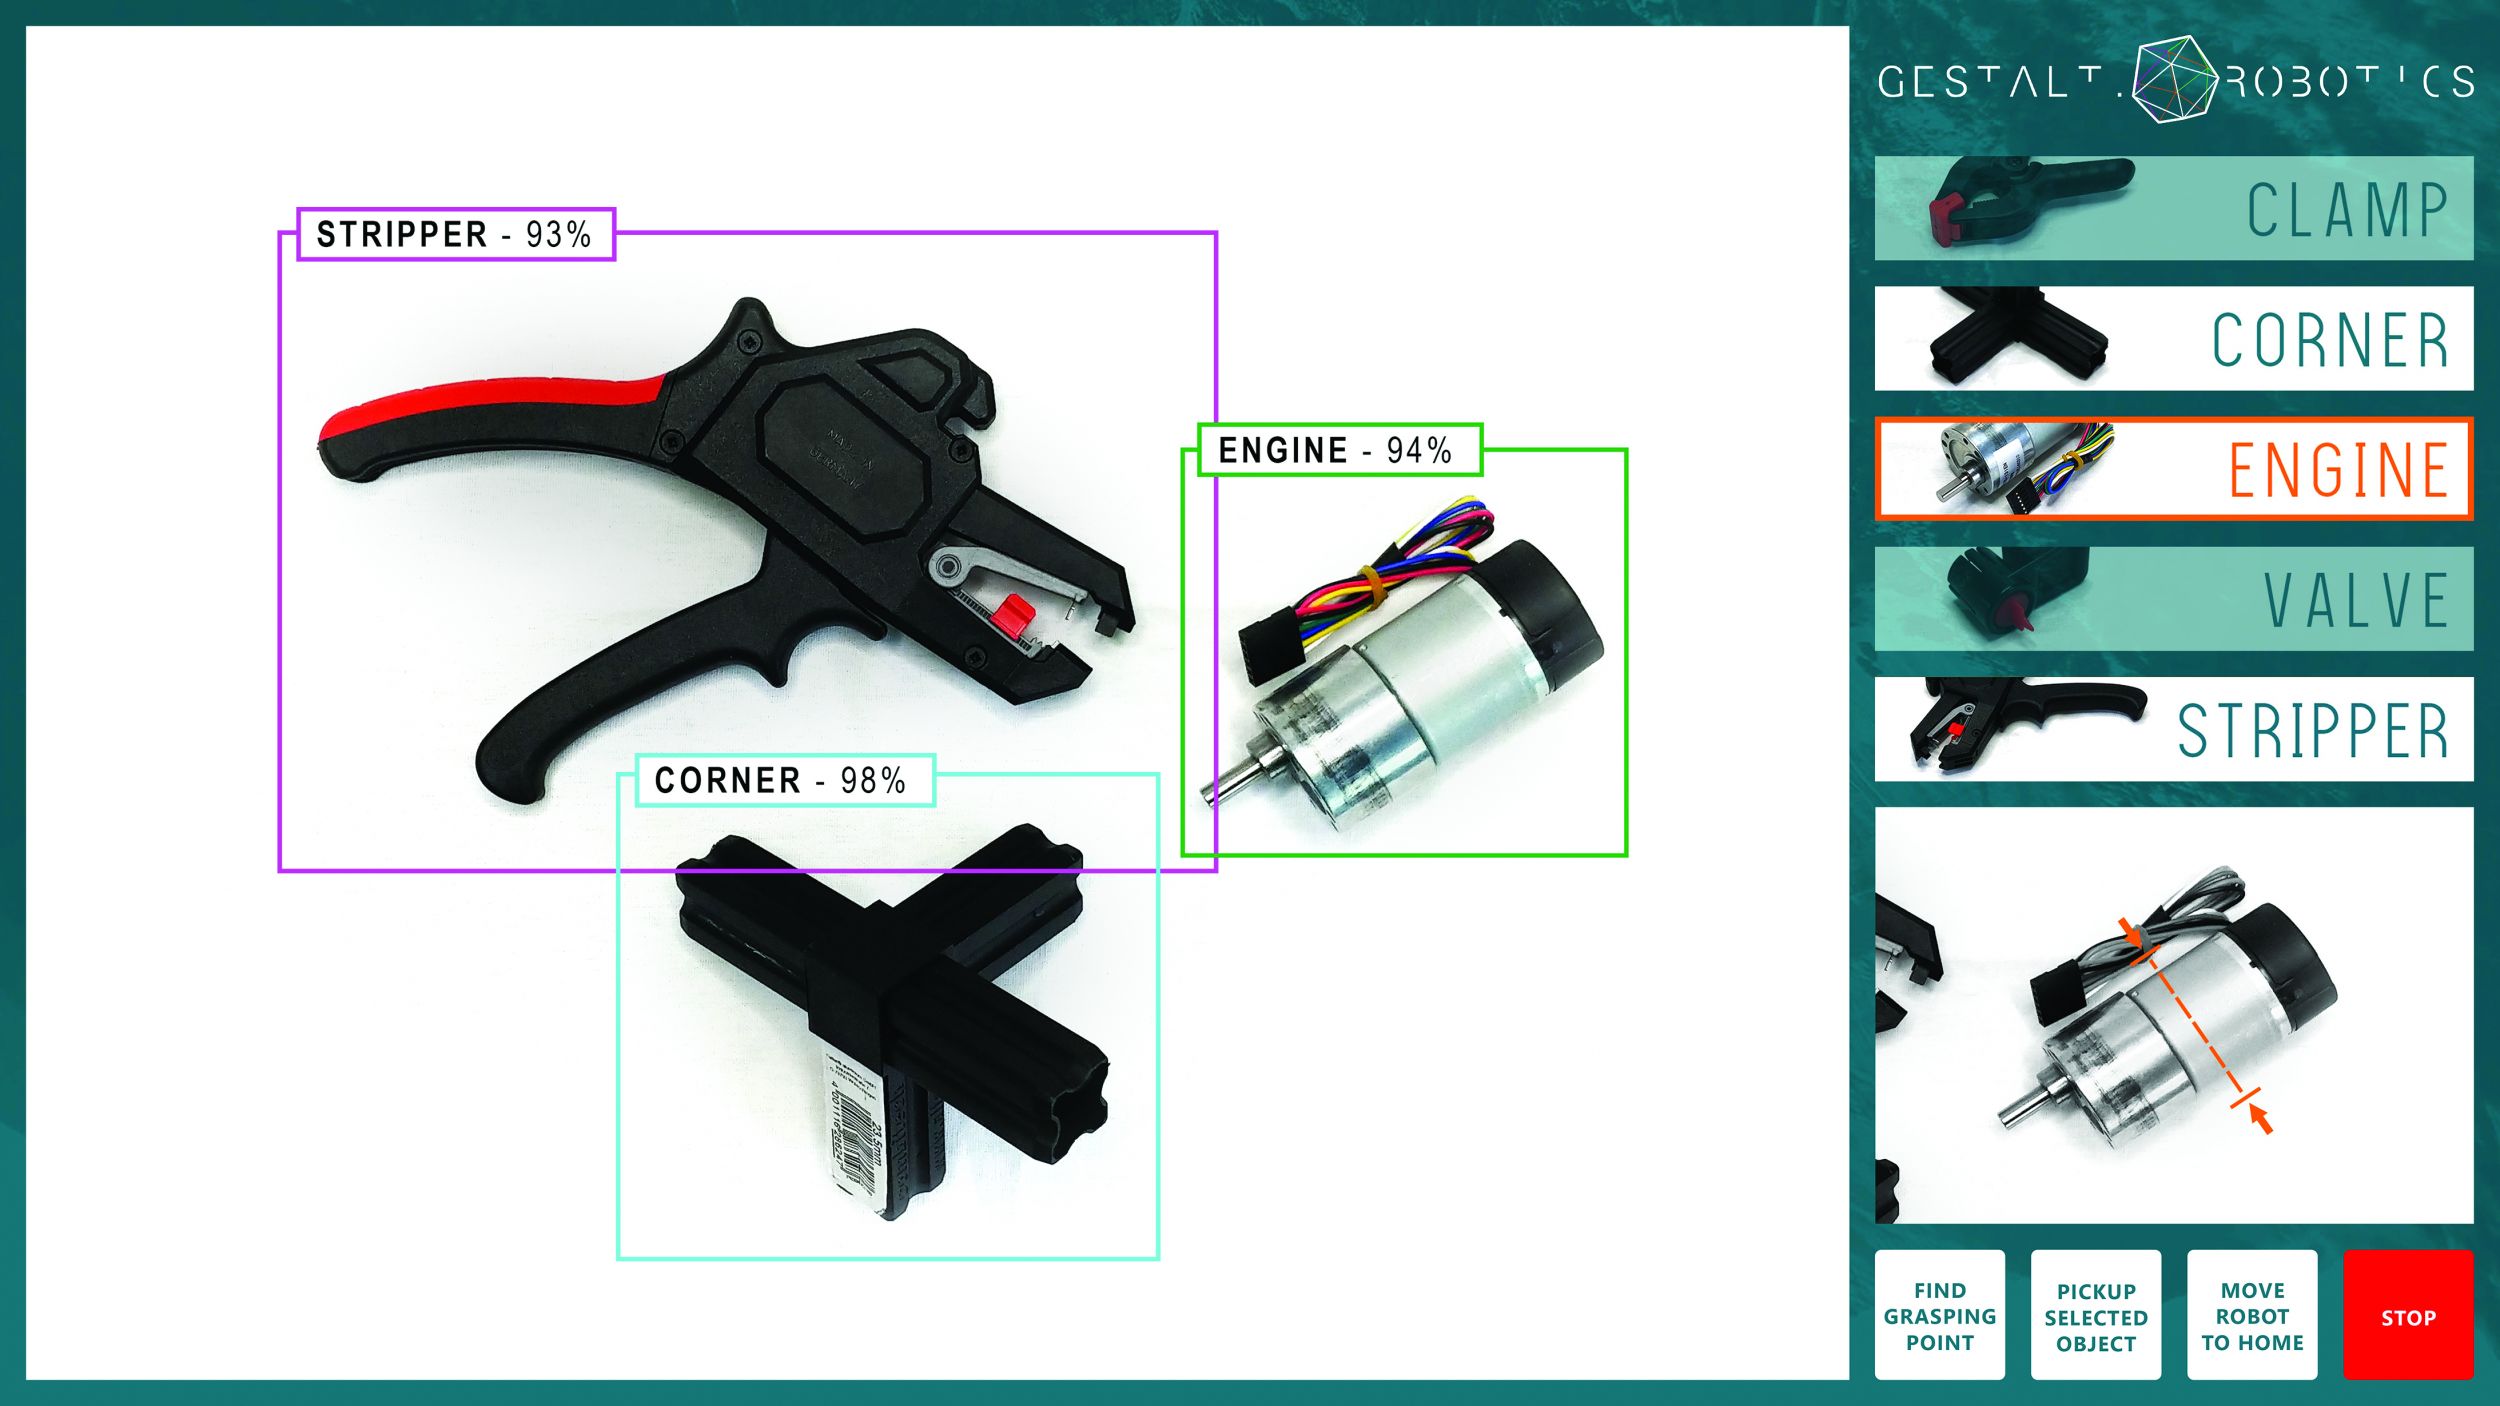 Bild 1 | Semantisches Interface zum flexiblen Greifen durch Objekterkennung (links) und KI-gestützter Greifpunkterkennung (unten rechts) (Bild: GESTALT Robotics GmbH)